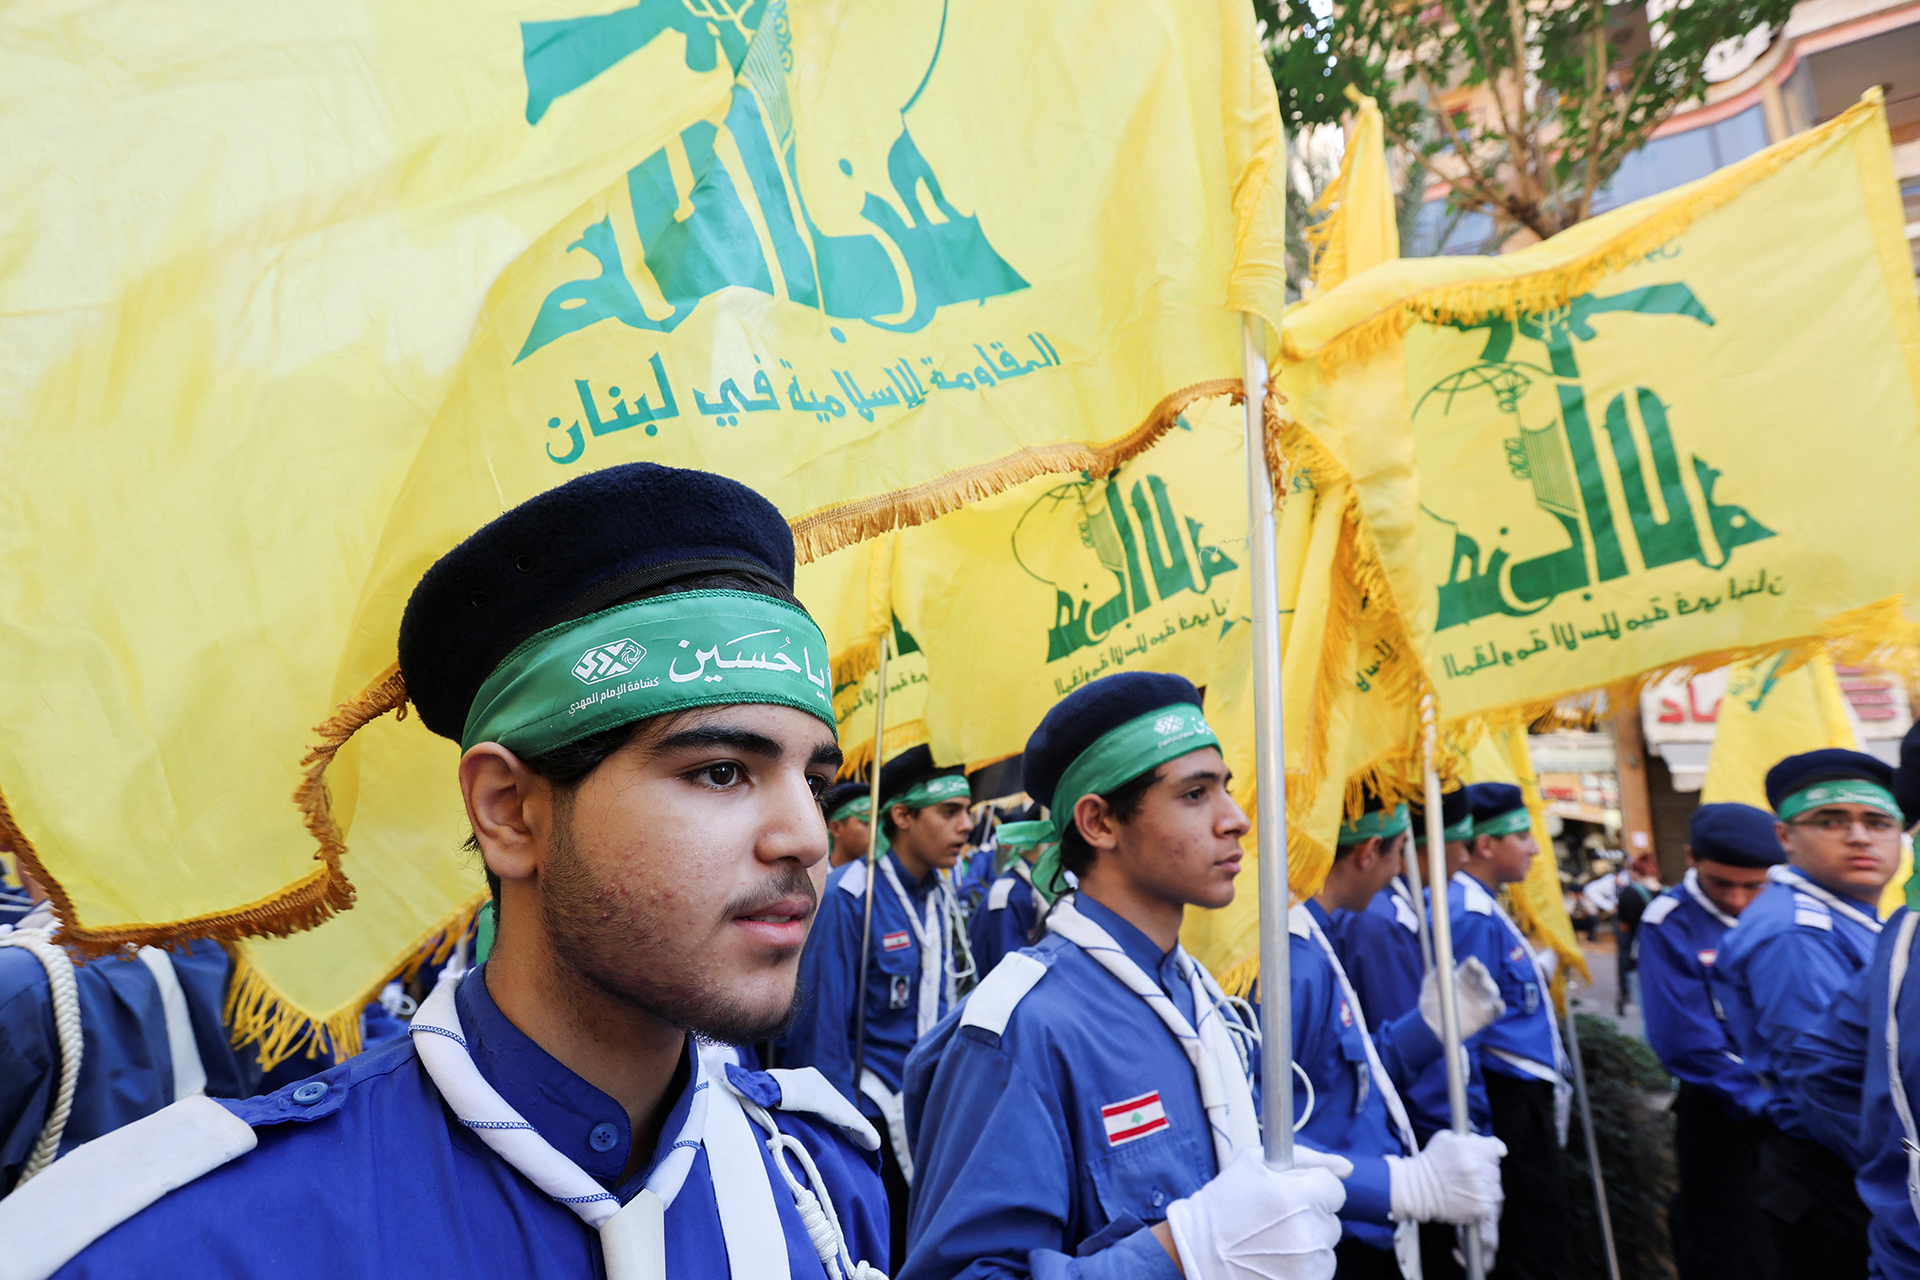 كشافة المهدي.. محاضن حزب الله التربوية ومورده البشري | أخبار – البوكس نيوز